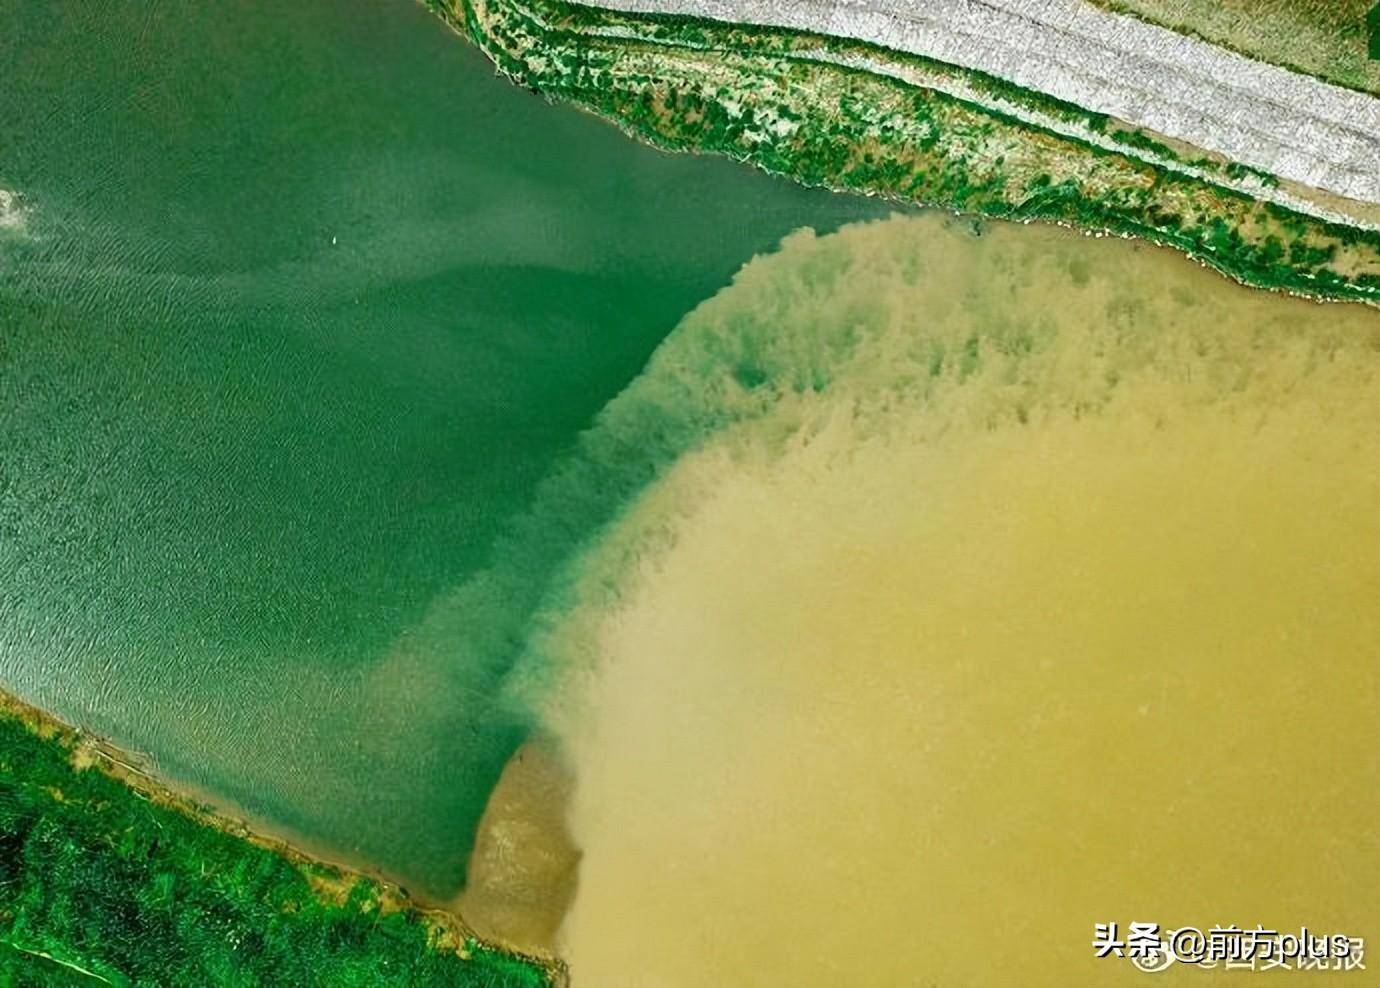 6月4日,在西安市高陵区渭河,泾河交汇处,浑浊的渭河与青蓝的泾河轻盈